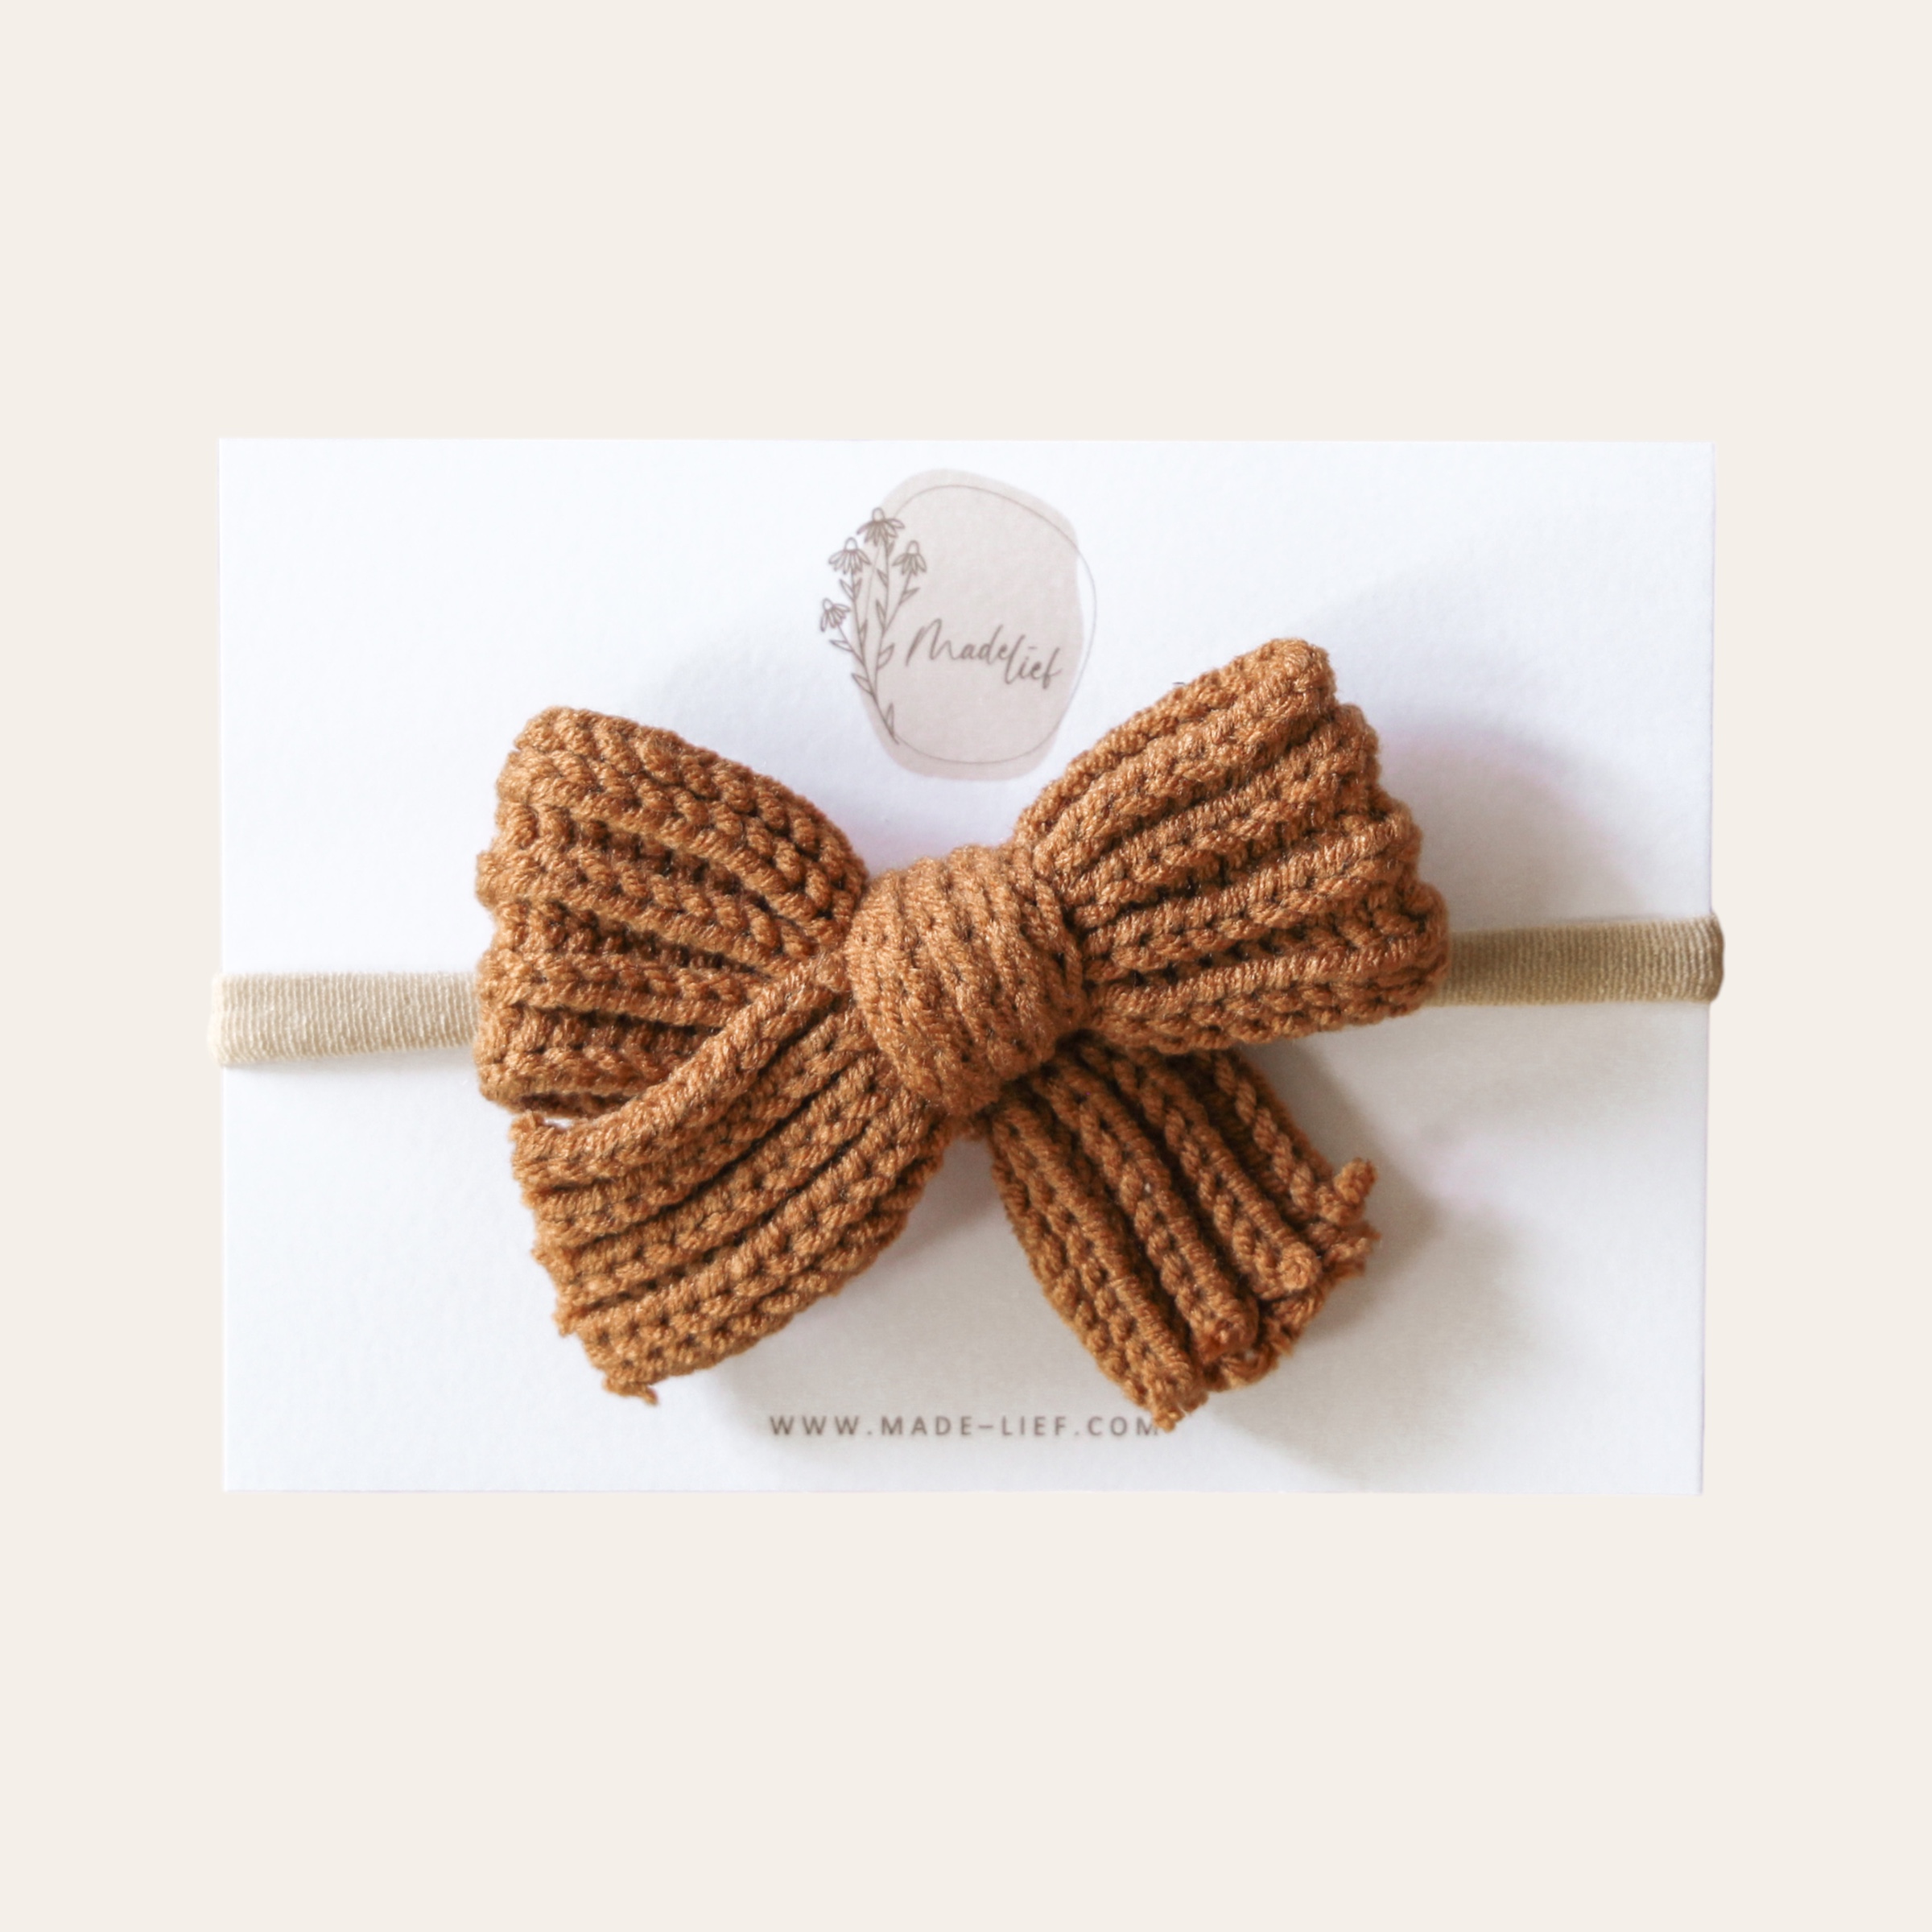 Haarband knitted strik - Cognac